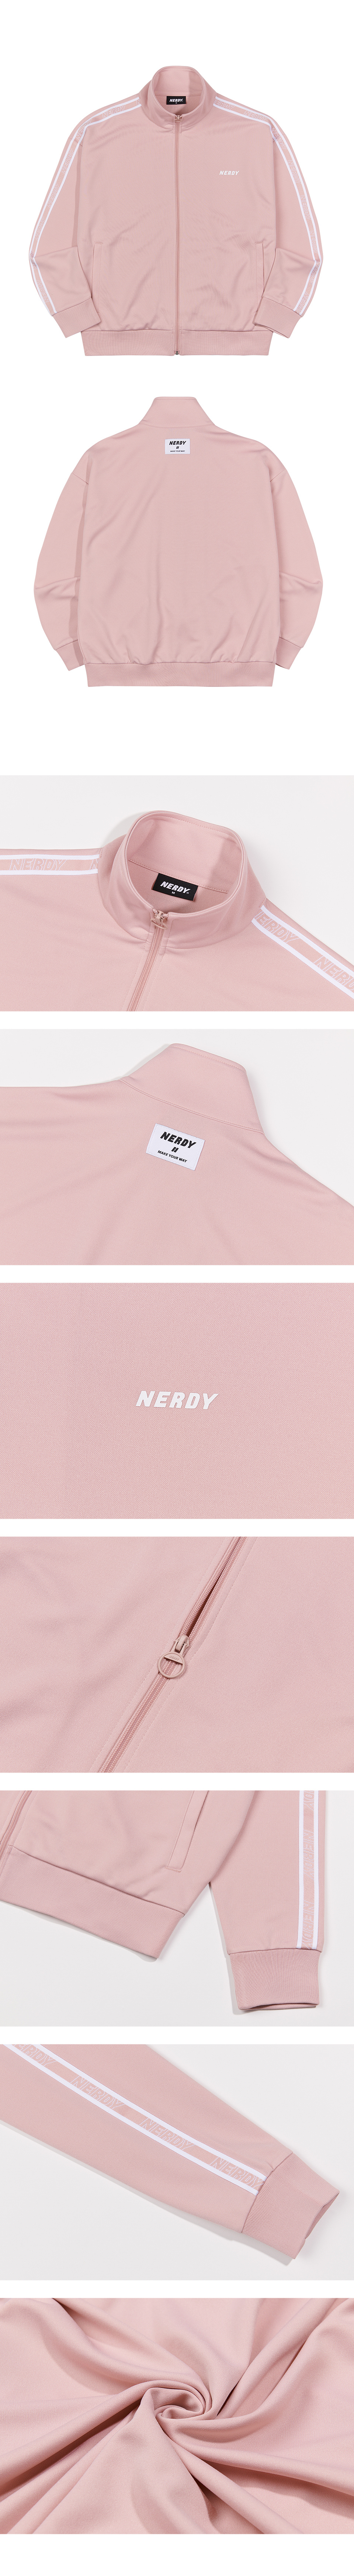 널디(NERDY) (21FW) 로고 테잎 트랙 세트 핑크